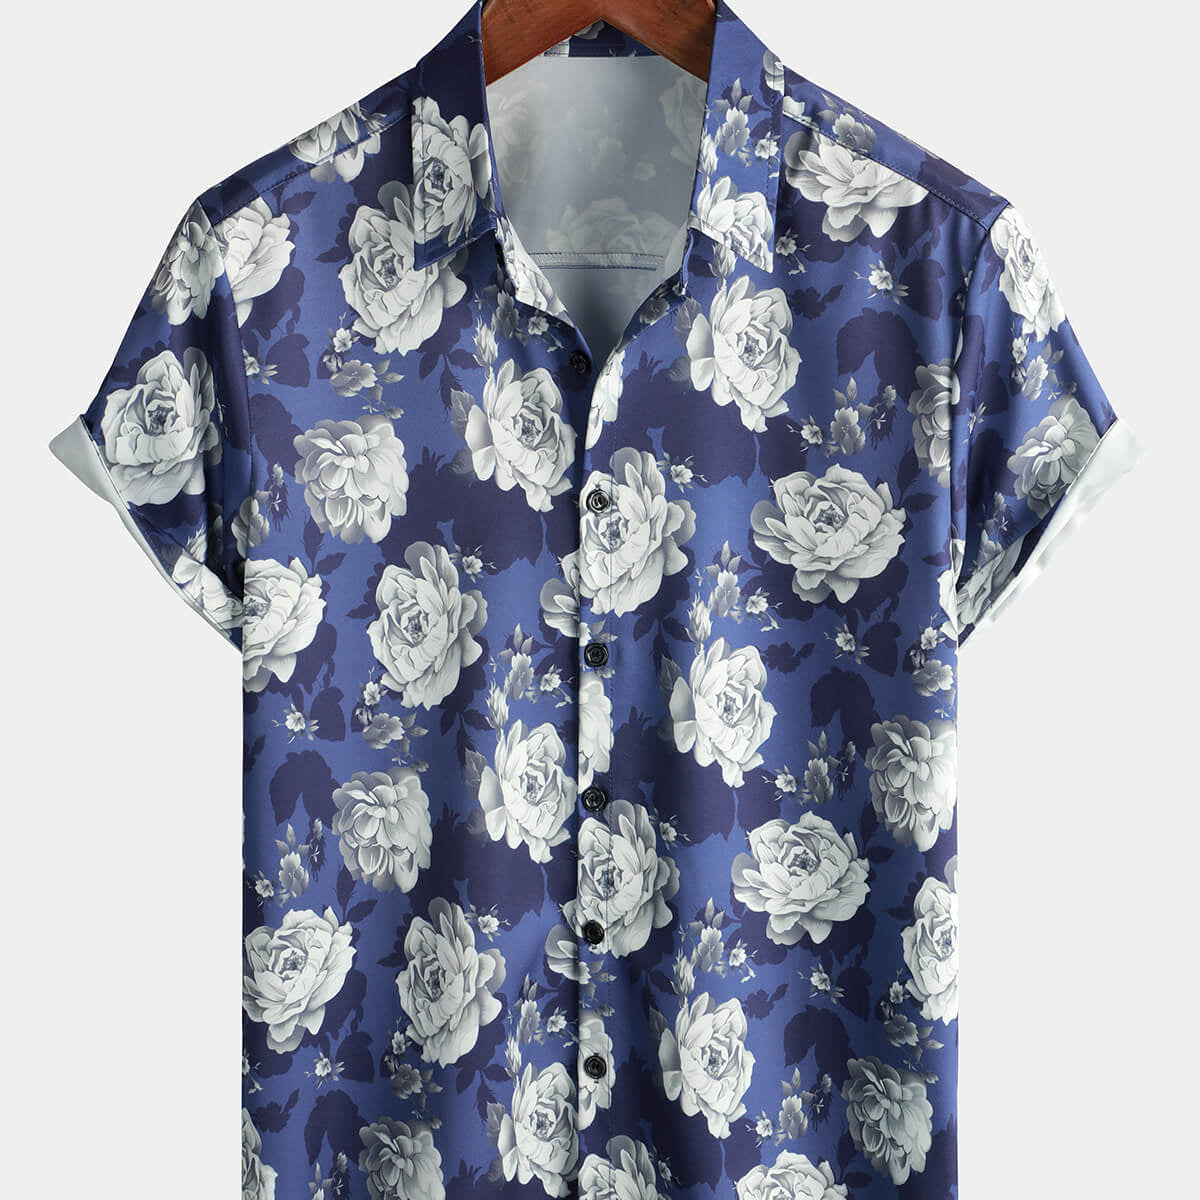 Camisa de verano de manga corta para hombre, color azul rosa, floral, playa, verano, vacaciones, con botones